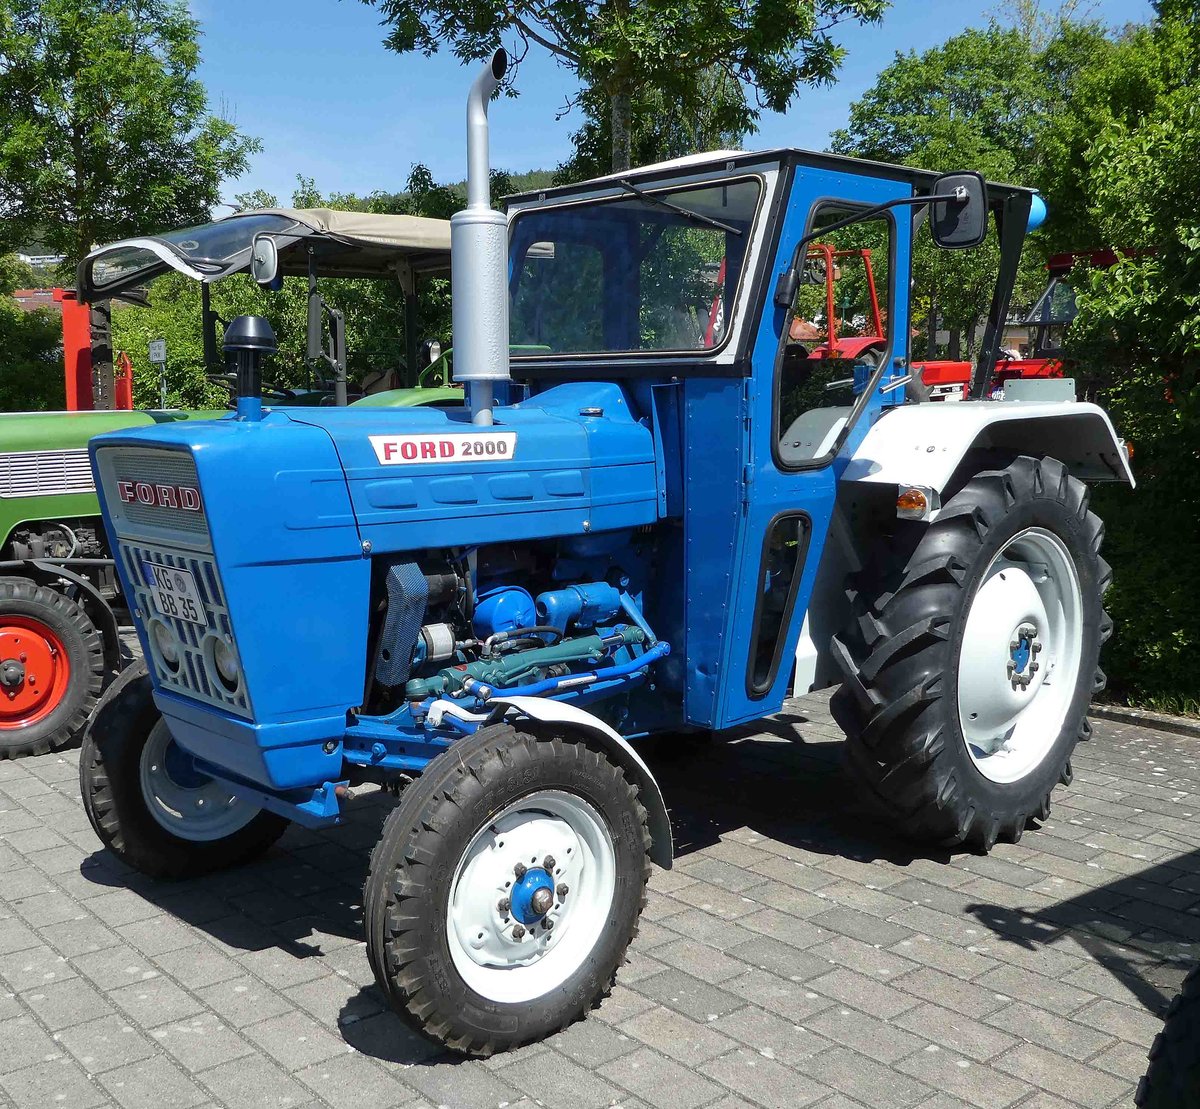 =Ford 2000, gesehen bei der Traktorenaustellung der Fendt-Freunde Bad Bocklet im Juni 2019